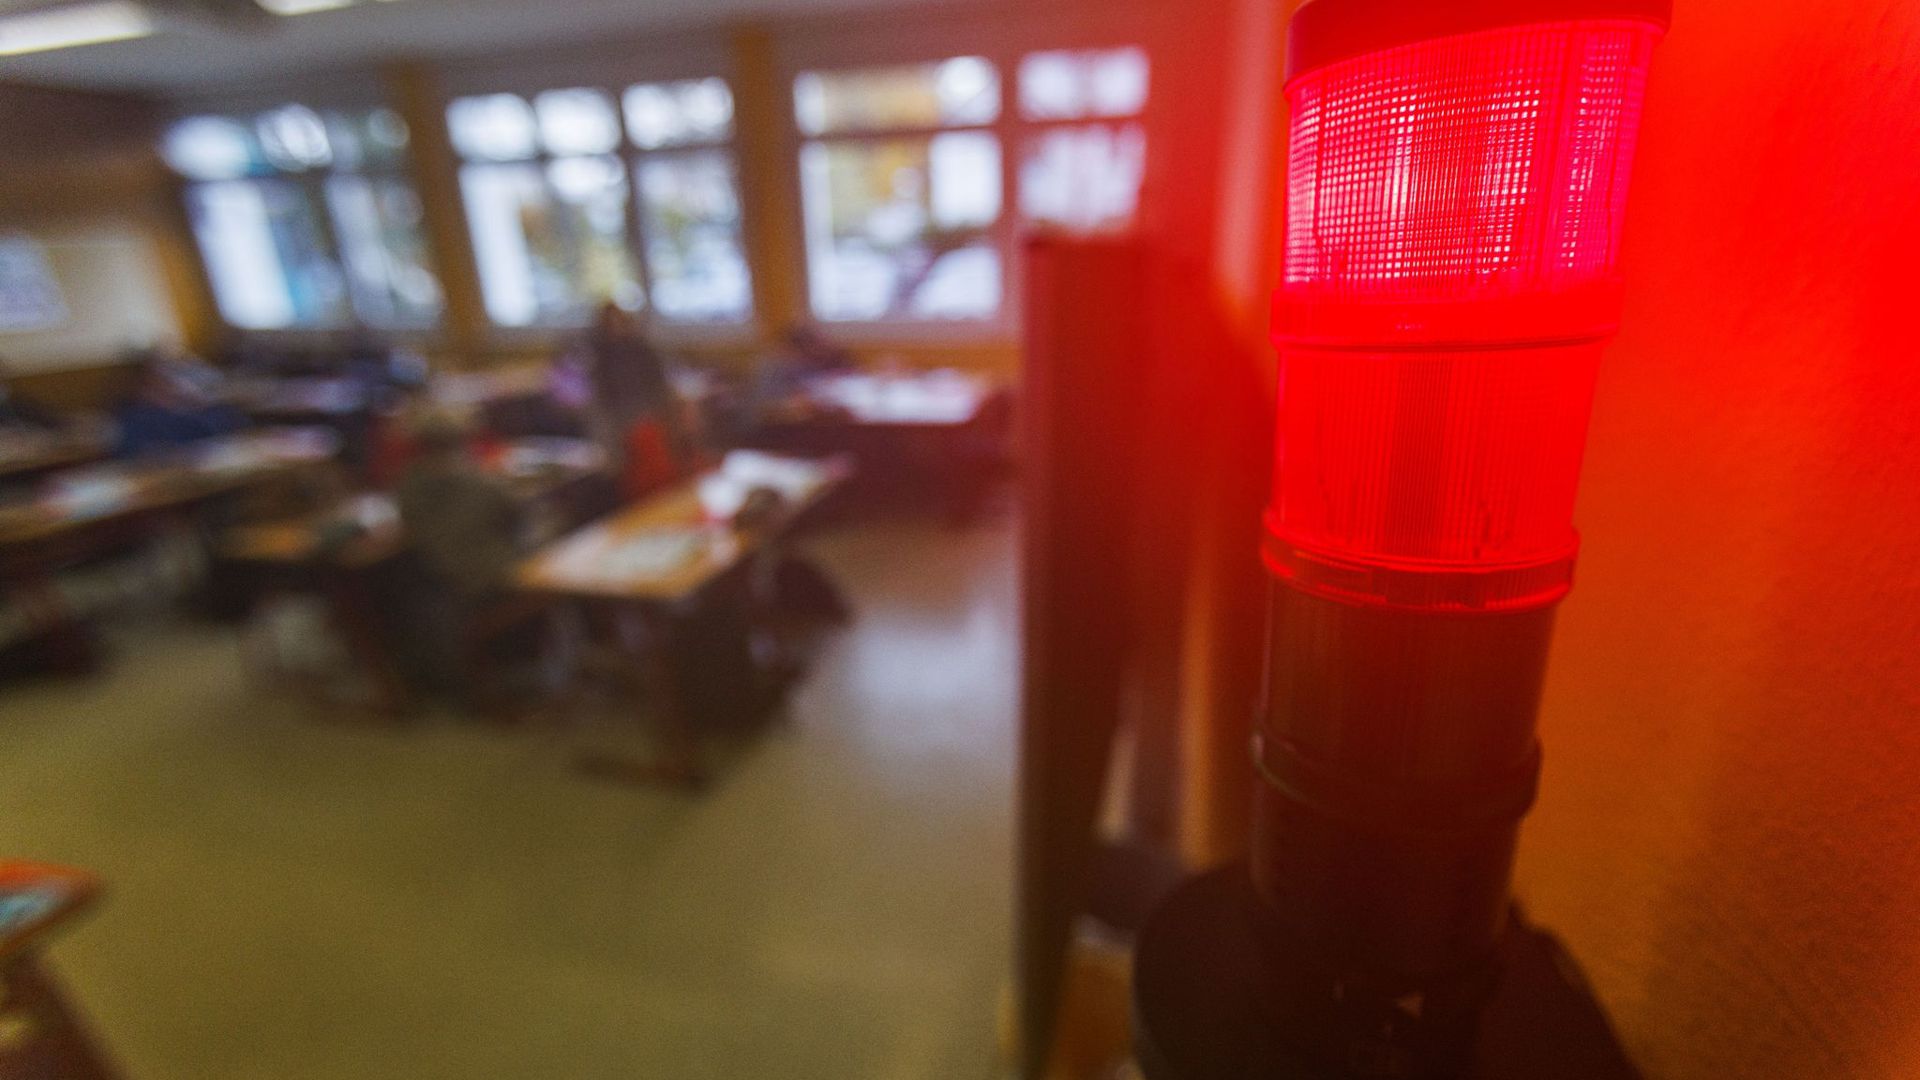 Eine Luftqualitätsampel in einem Klassenzimmer zeigt die Farbe rot.